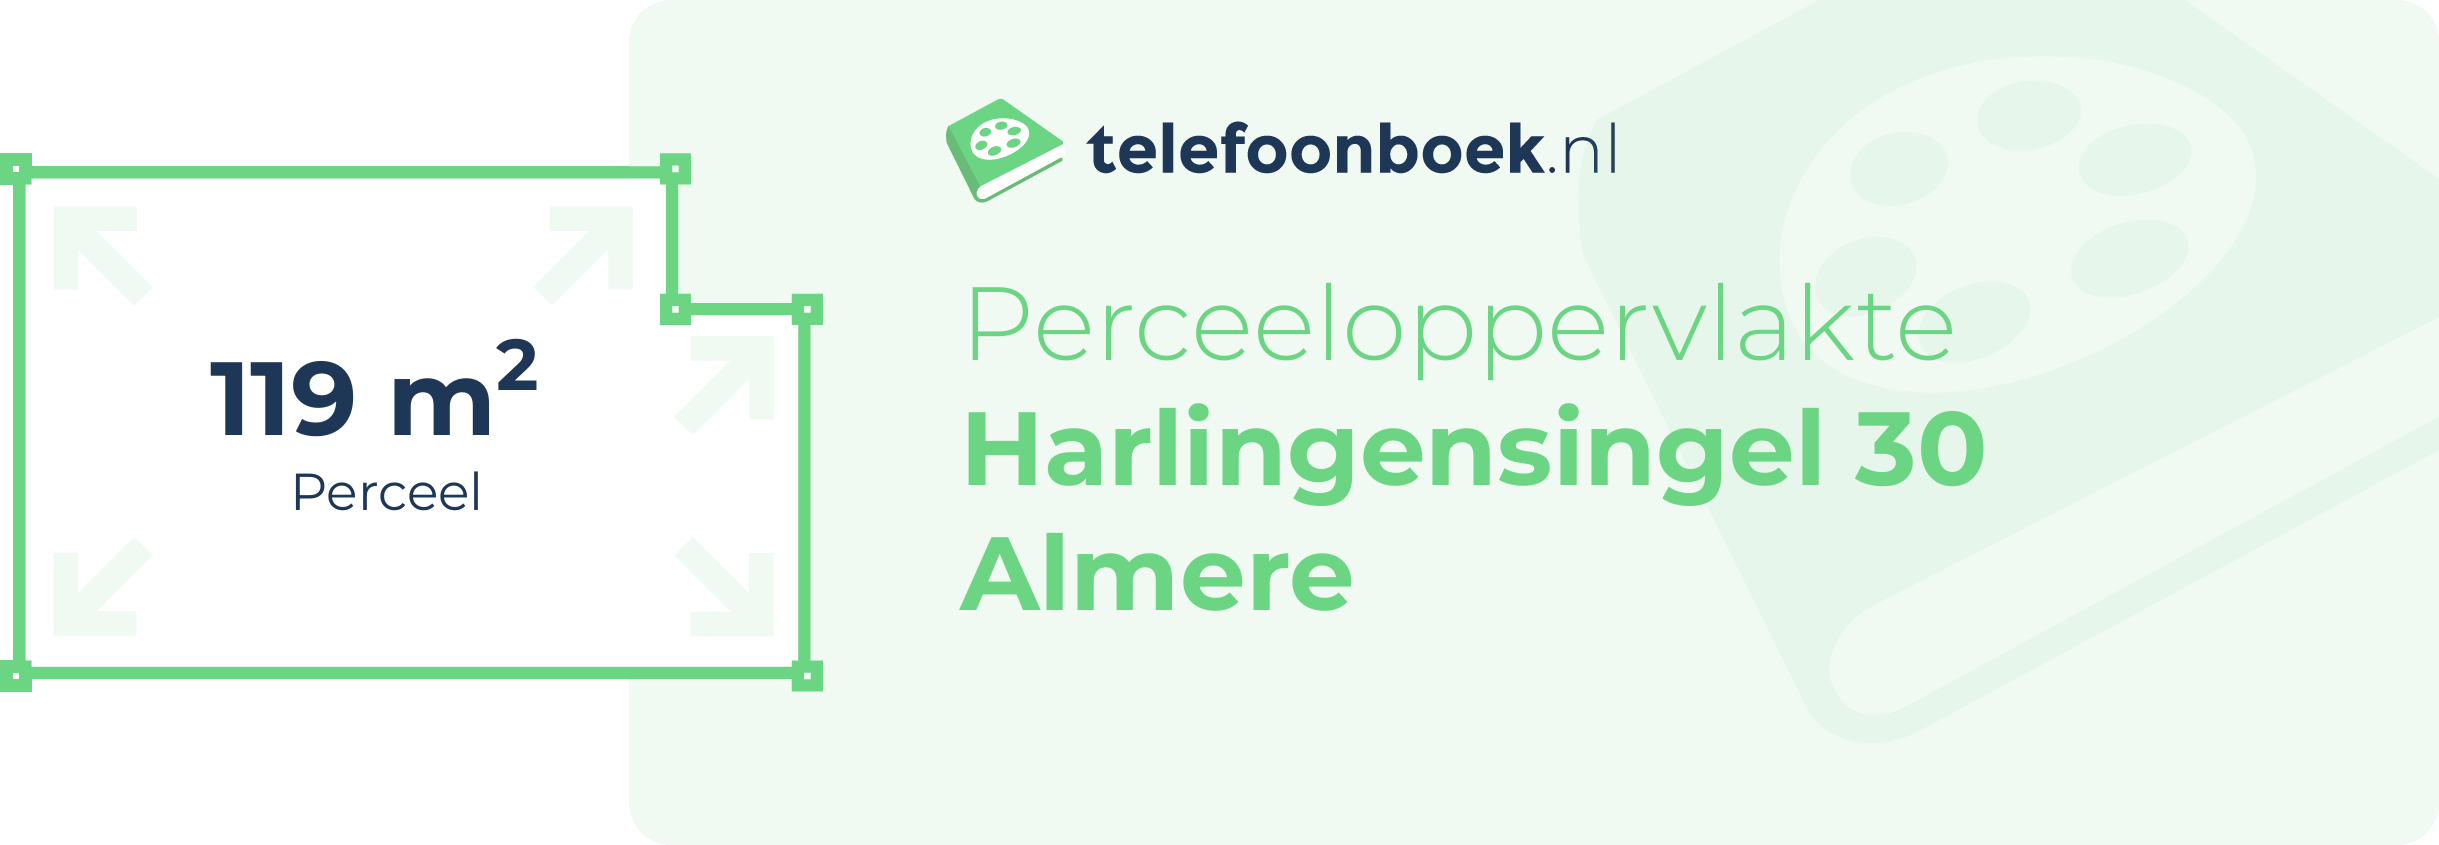 Perceeloppervlakte Harlingensingel 30 Almere